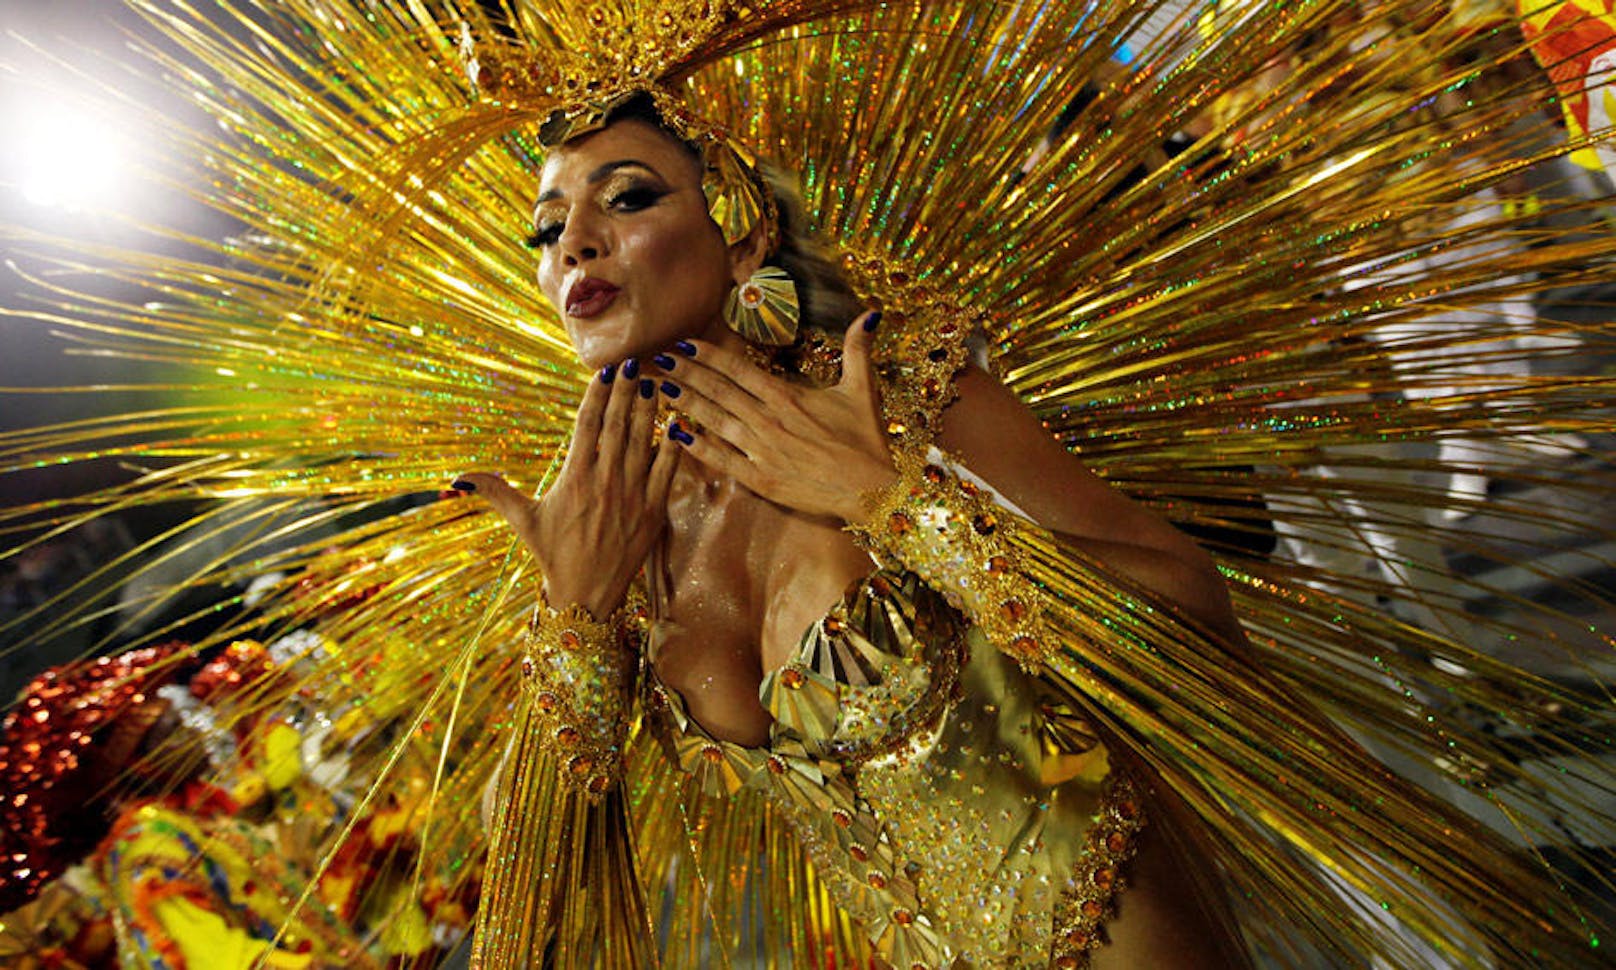 25.02.2017: Beim Karneval in Sao Paulo wird neben bunten Farben, prächtigen Kostümen auch viel nackte Haut gezeigt.